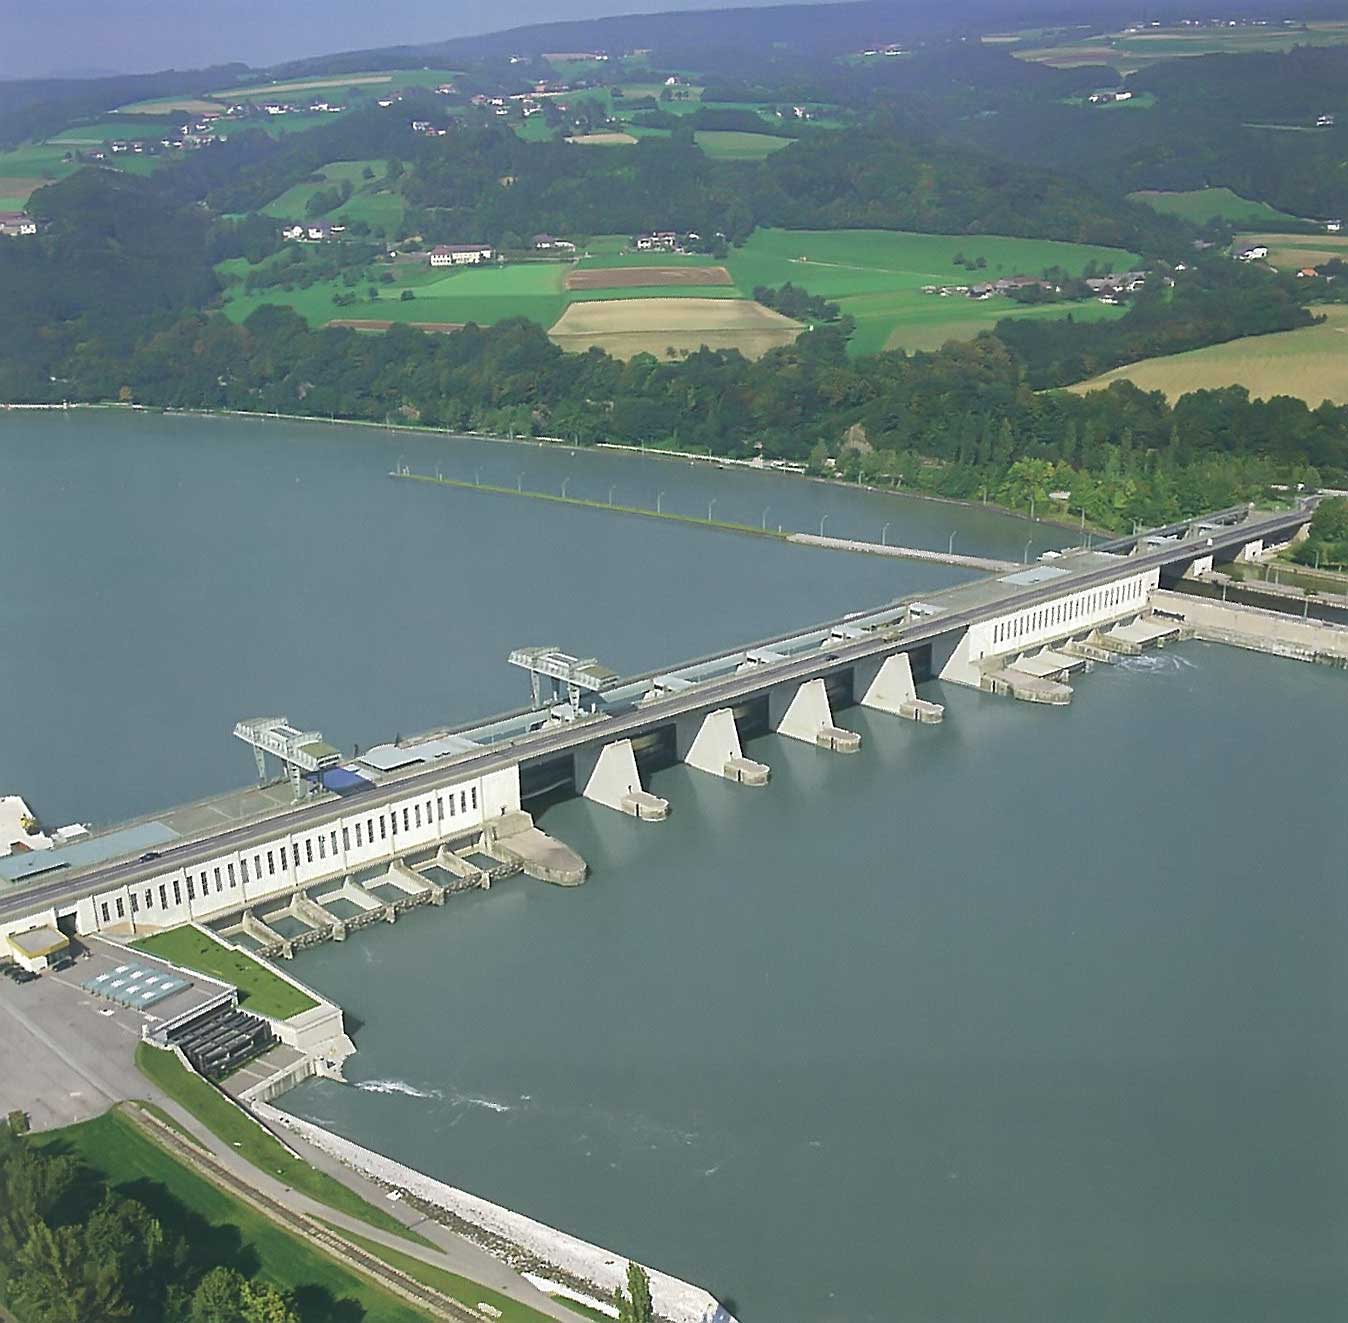 Les centrales gravitaires utilisent le même principe que les centrales hydroélectriques (ici, sur la photo), mais elles ne présentent pas de barrage ou de réserve d'eau. © fr.academic.ru